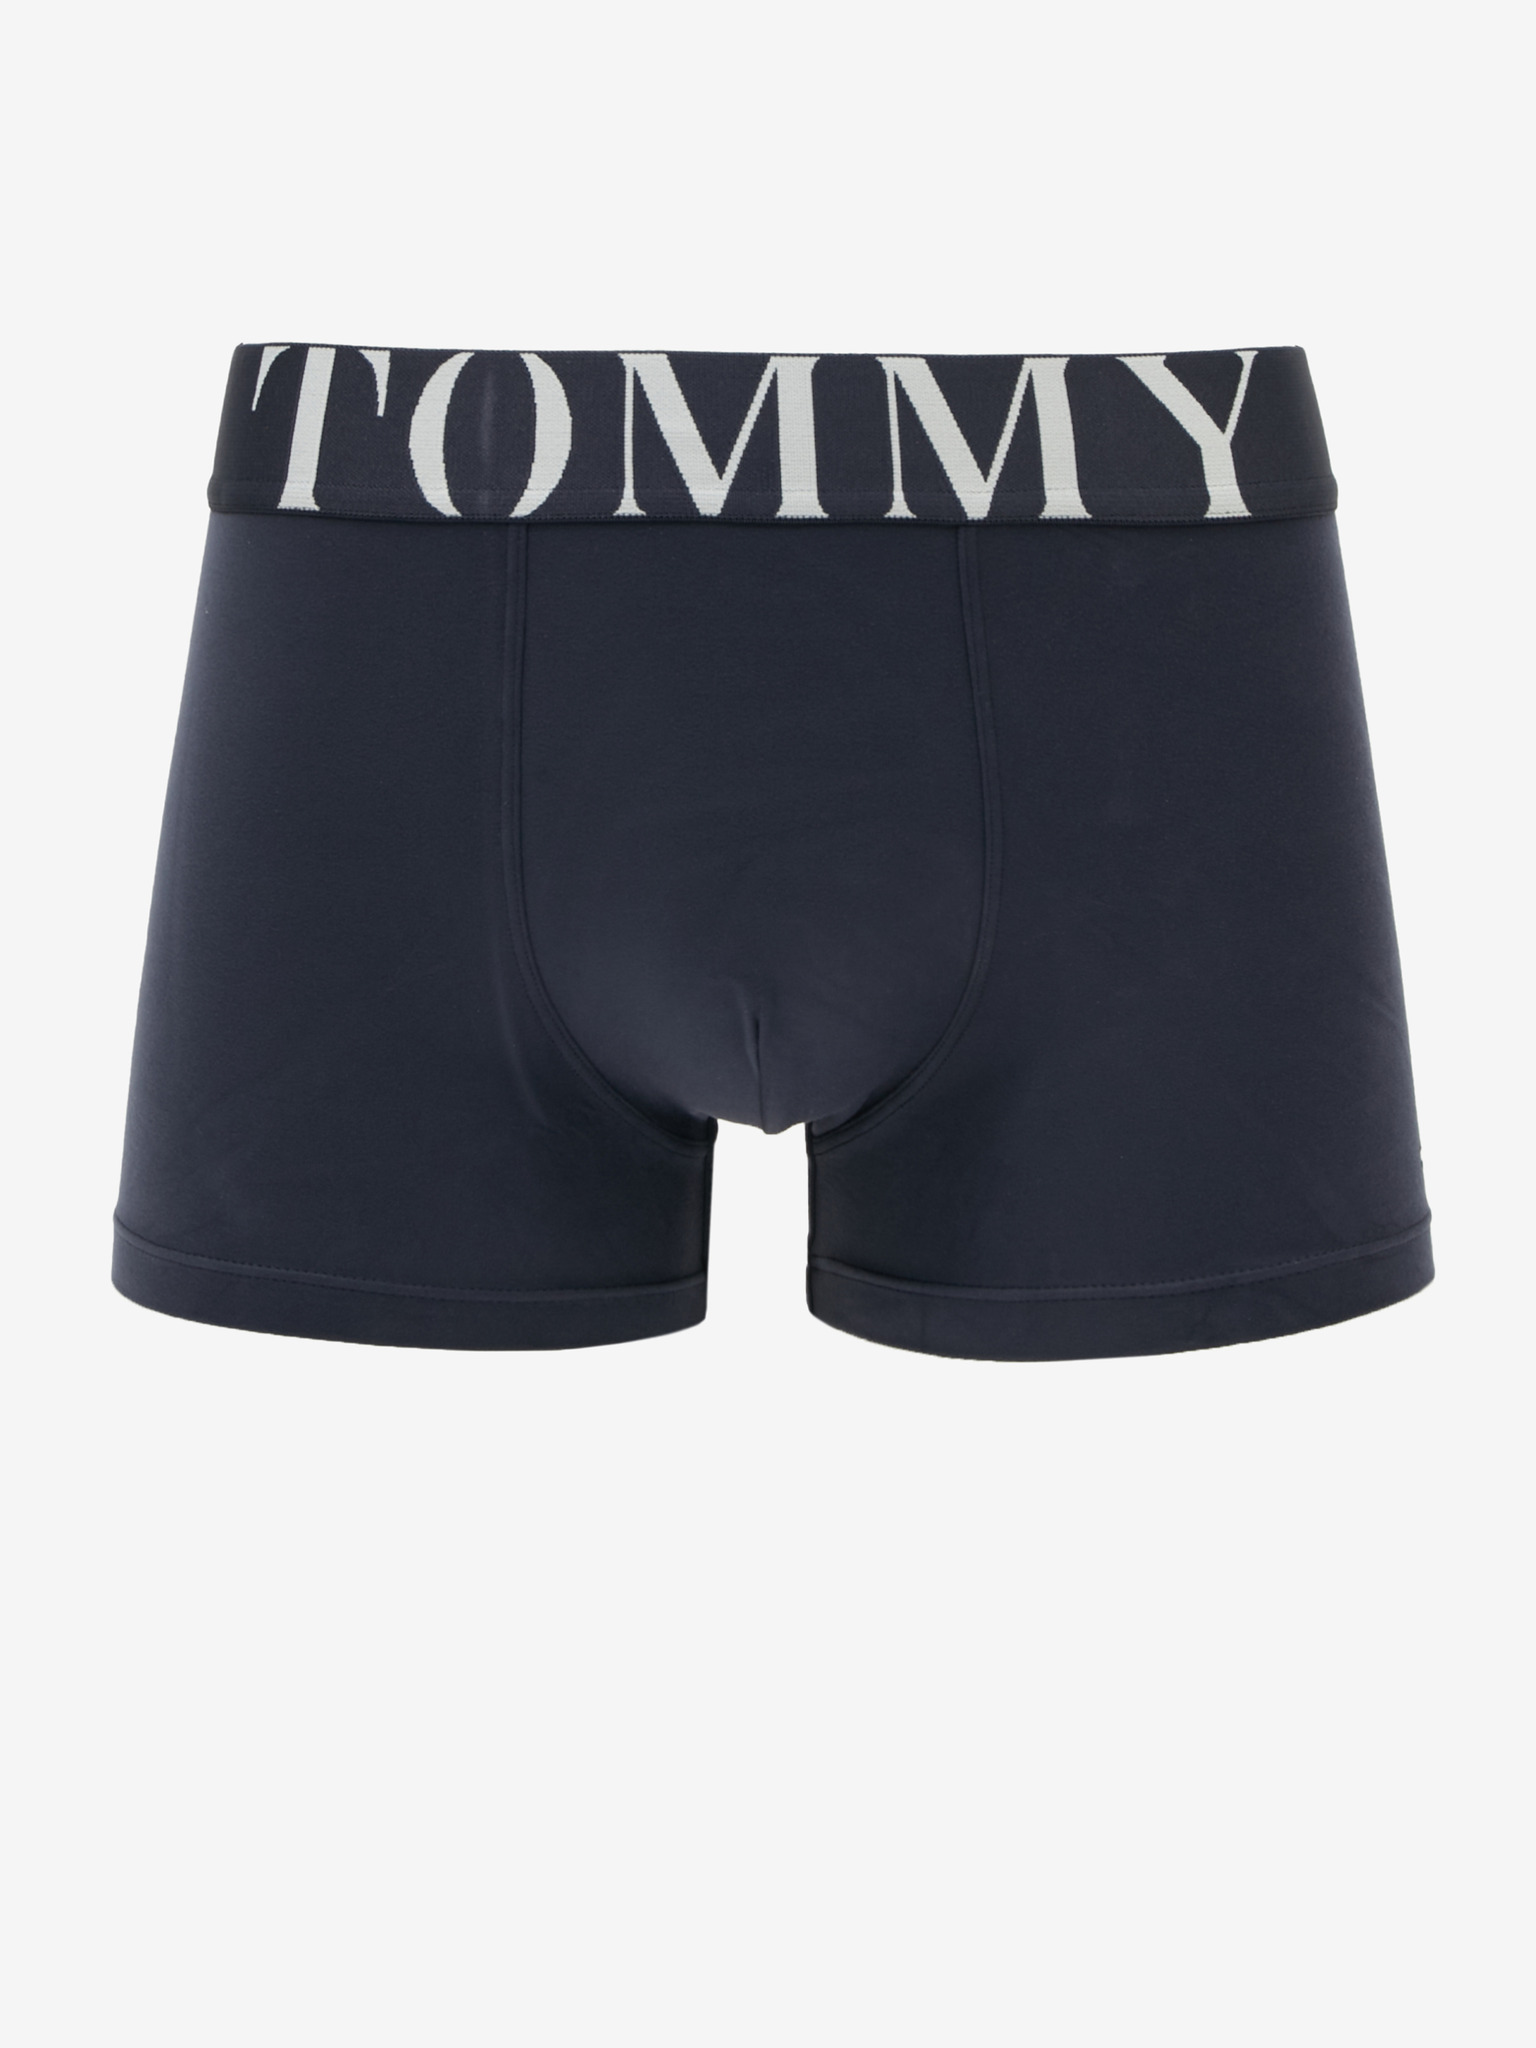 Tommy Hilfiger Underwear - Boxer shorts